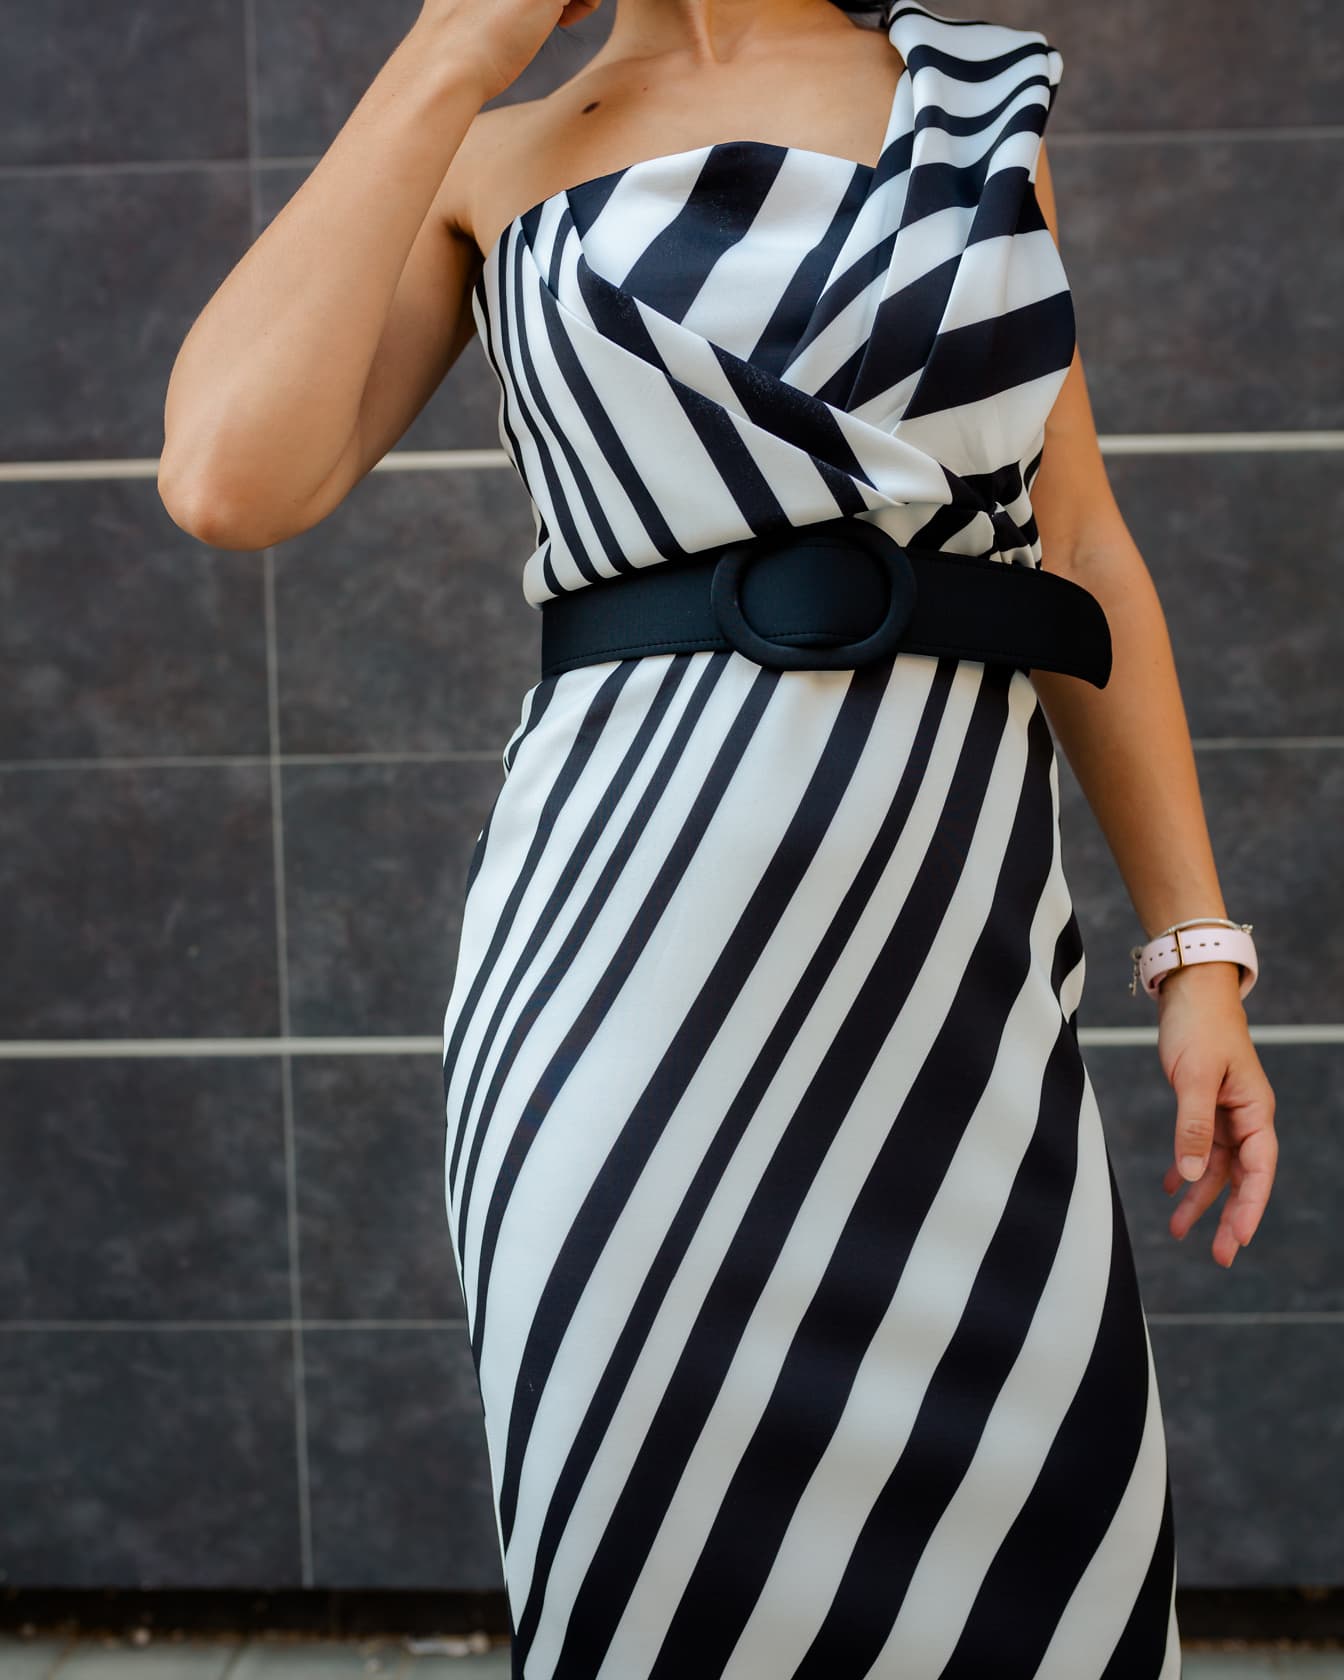 Attraktives schwarz-weißes Outfit für Geschäftsfrau mit schwarzem Gürtel